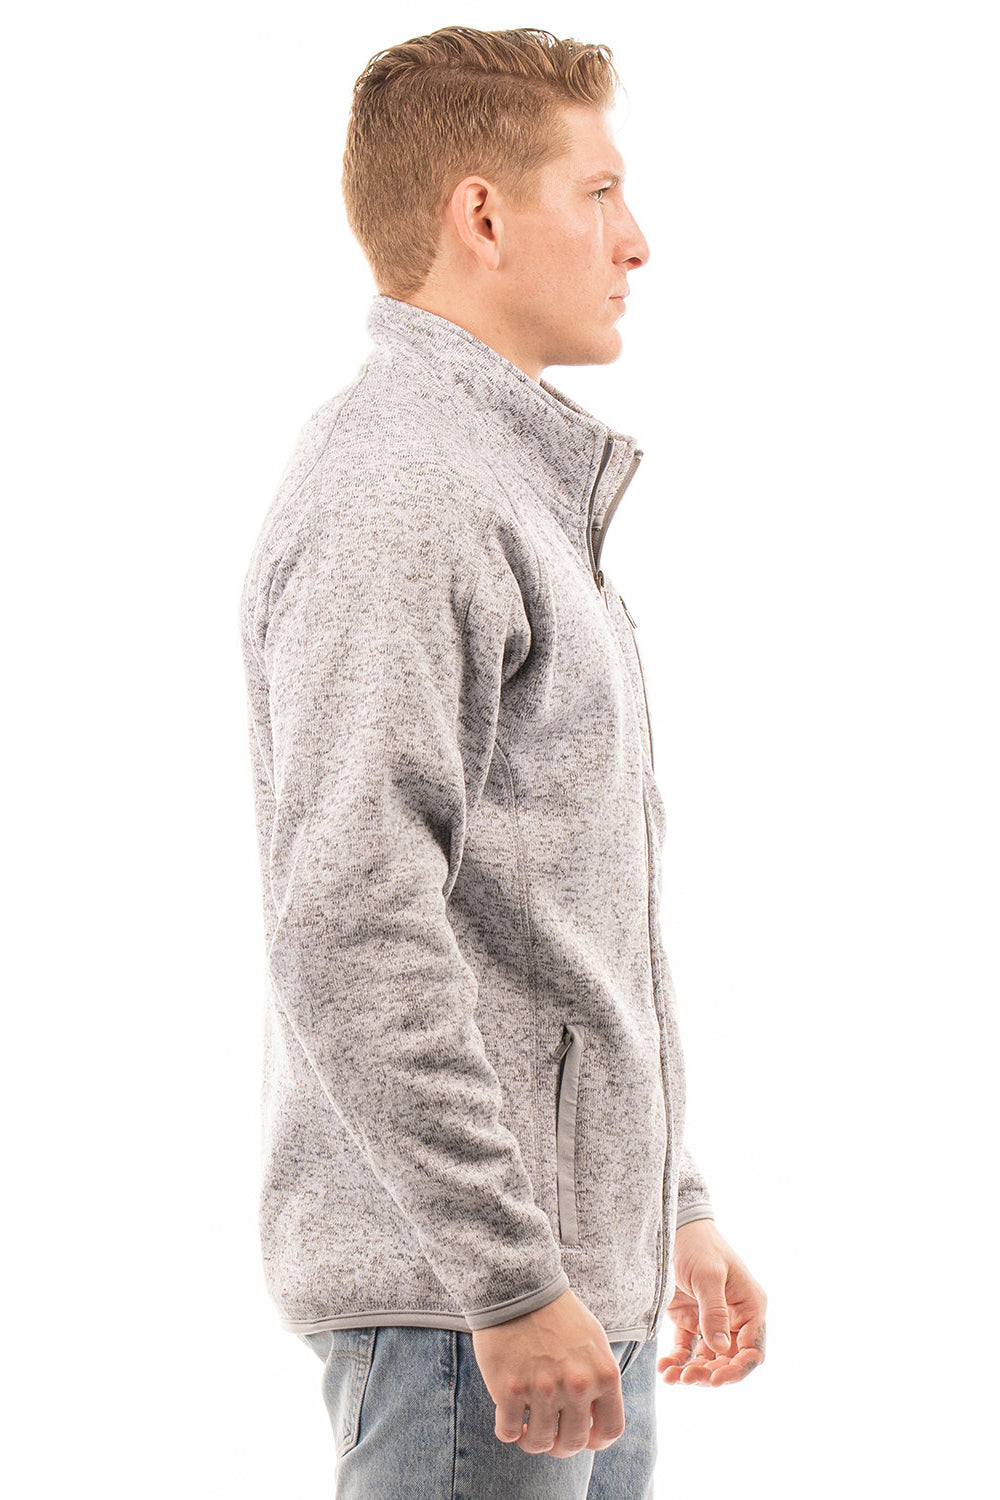 Burnside 3901 Mens Sweater Knit Full Zip Jacket Heather Grey Model Side